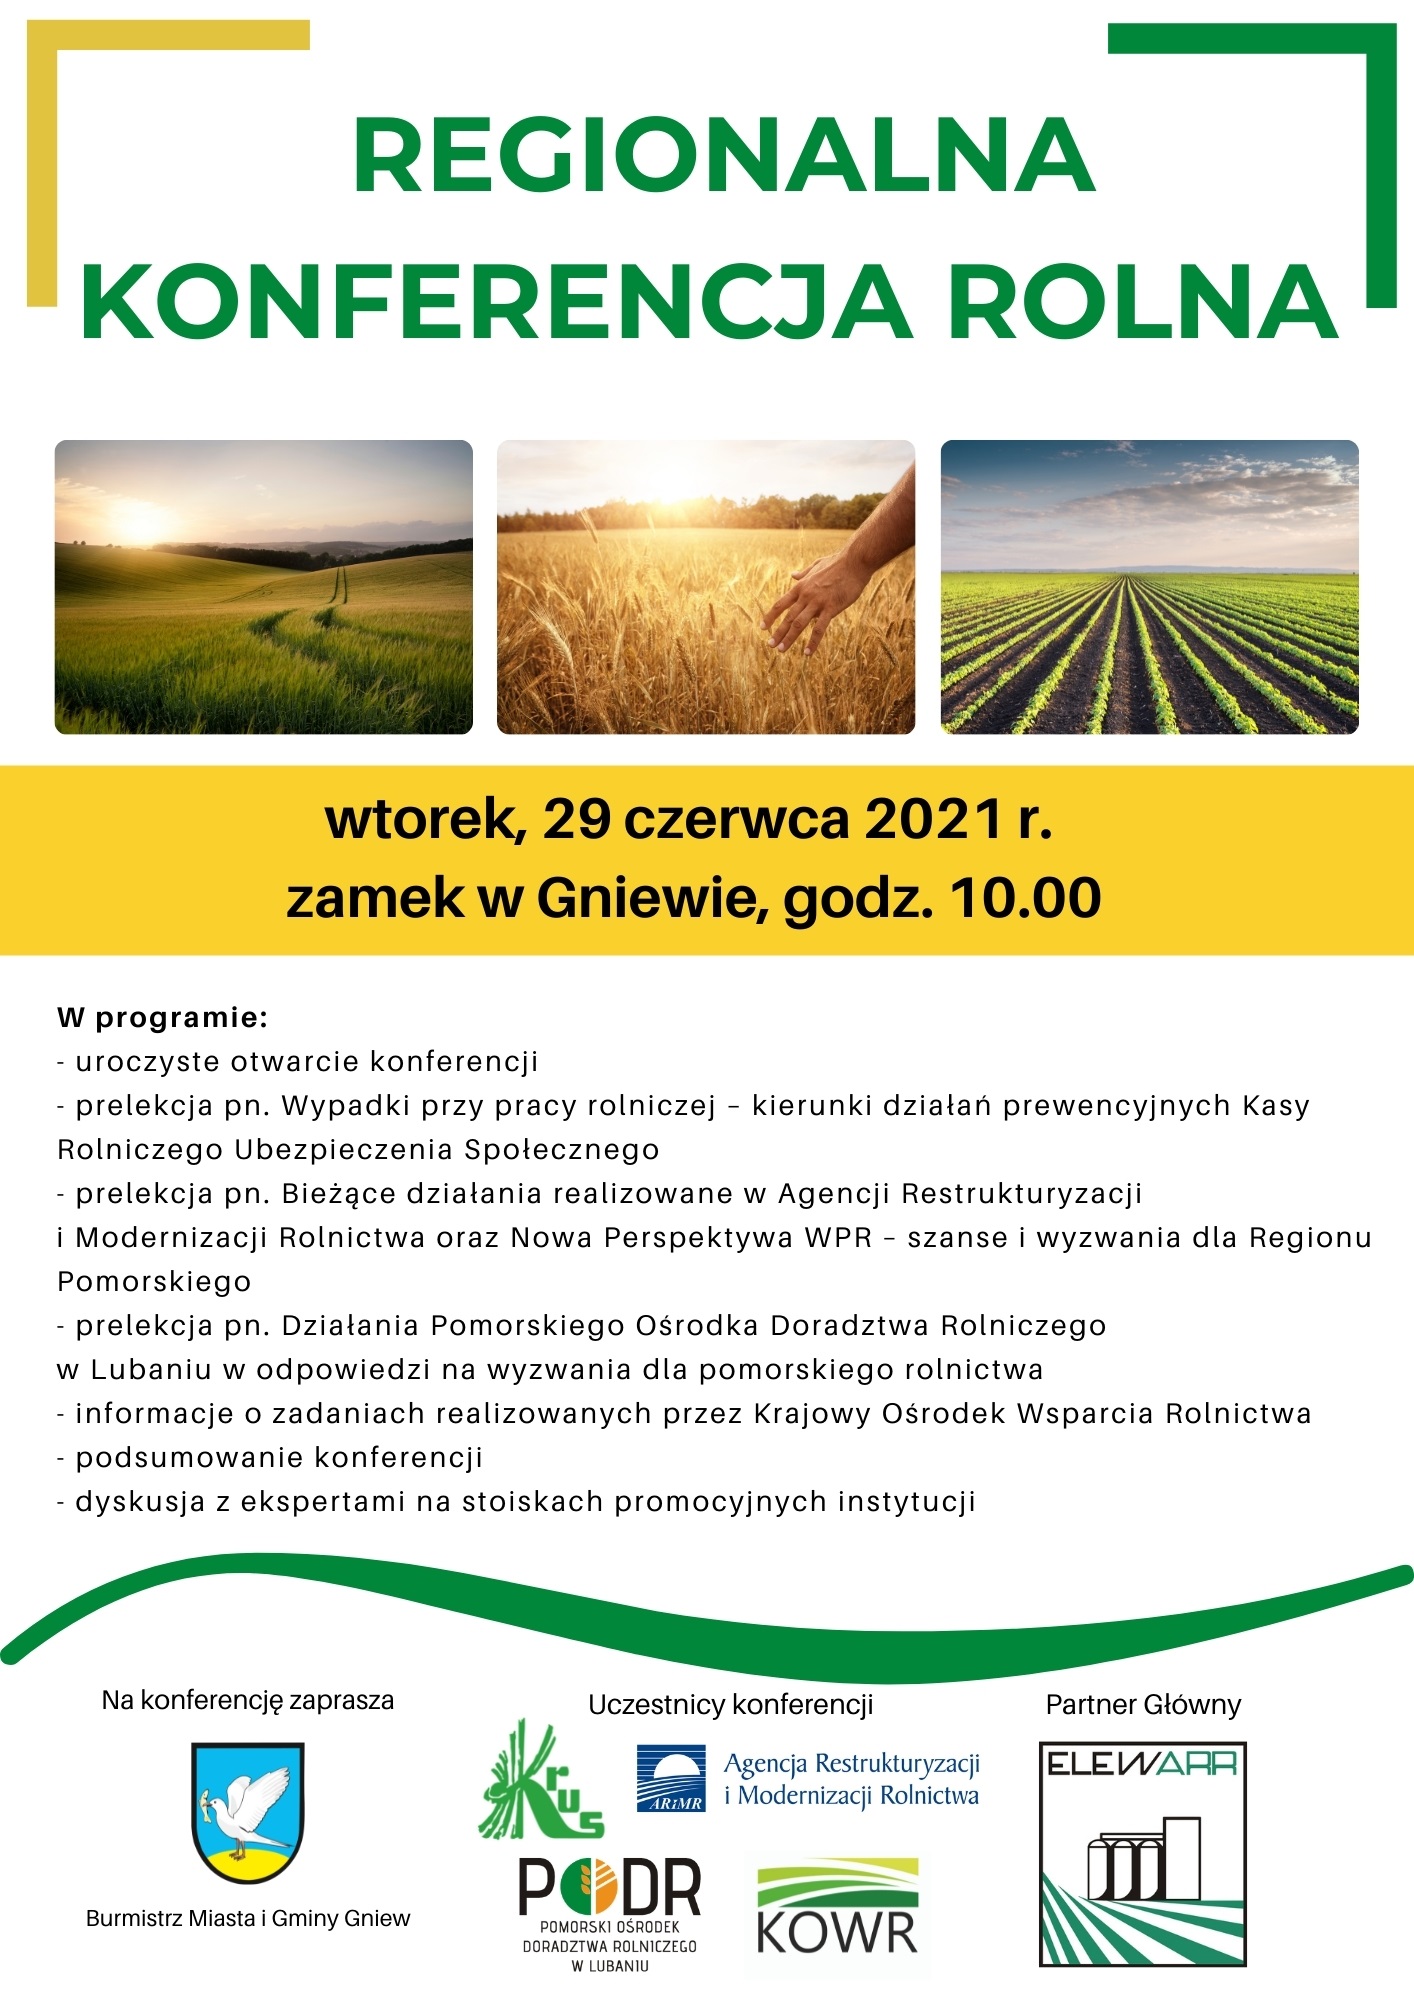  Fot. Konferencja rolna - plakat.jpg 